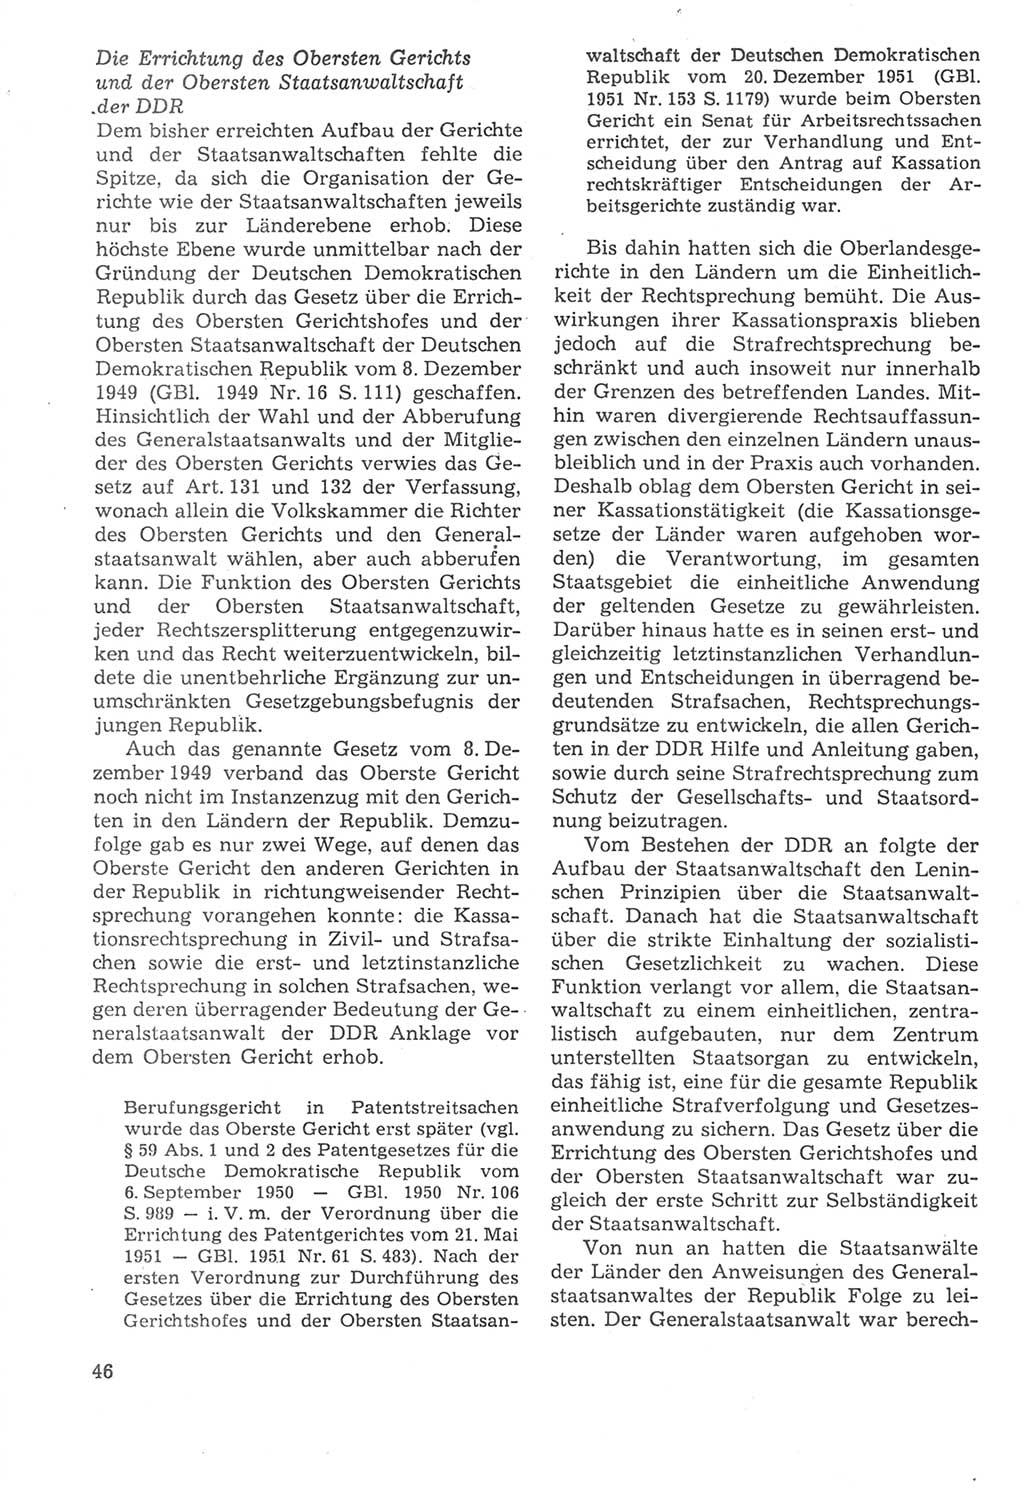 Strafverfahrensrecht [Deutsche Demokratische Republik (DDR)], Lehrbuch 1987, Seite 46 (Strafverf.-R. DDR Lb. 1987, S. 46)